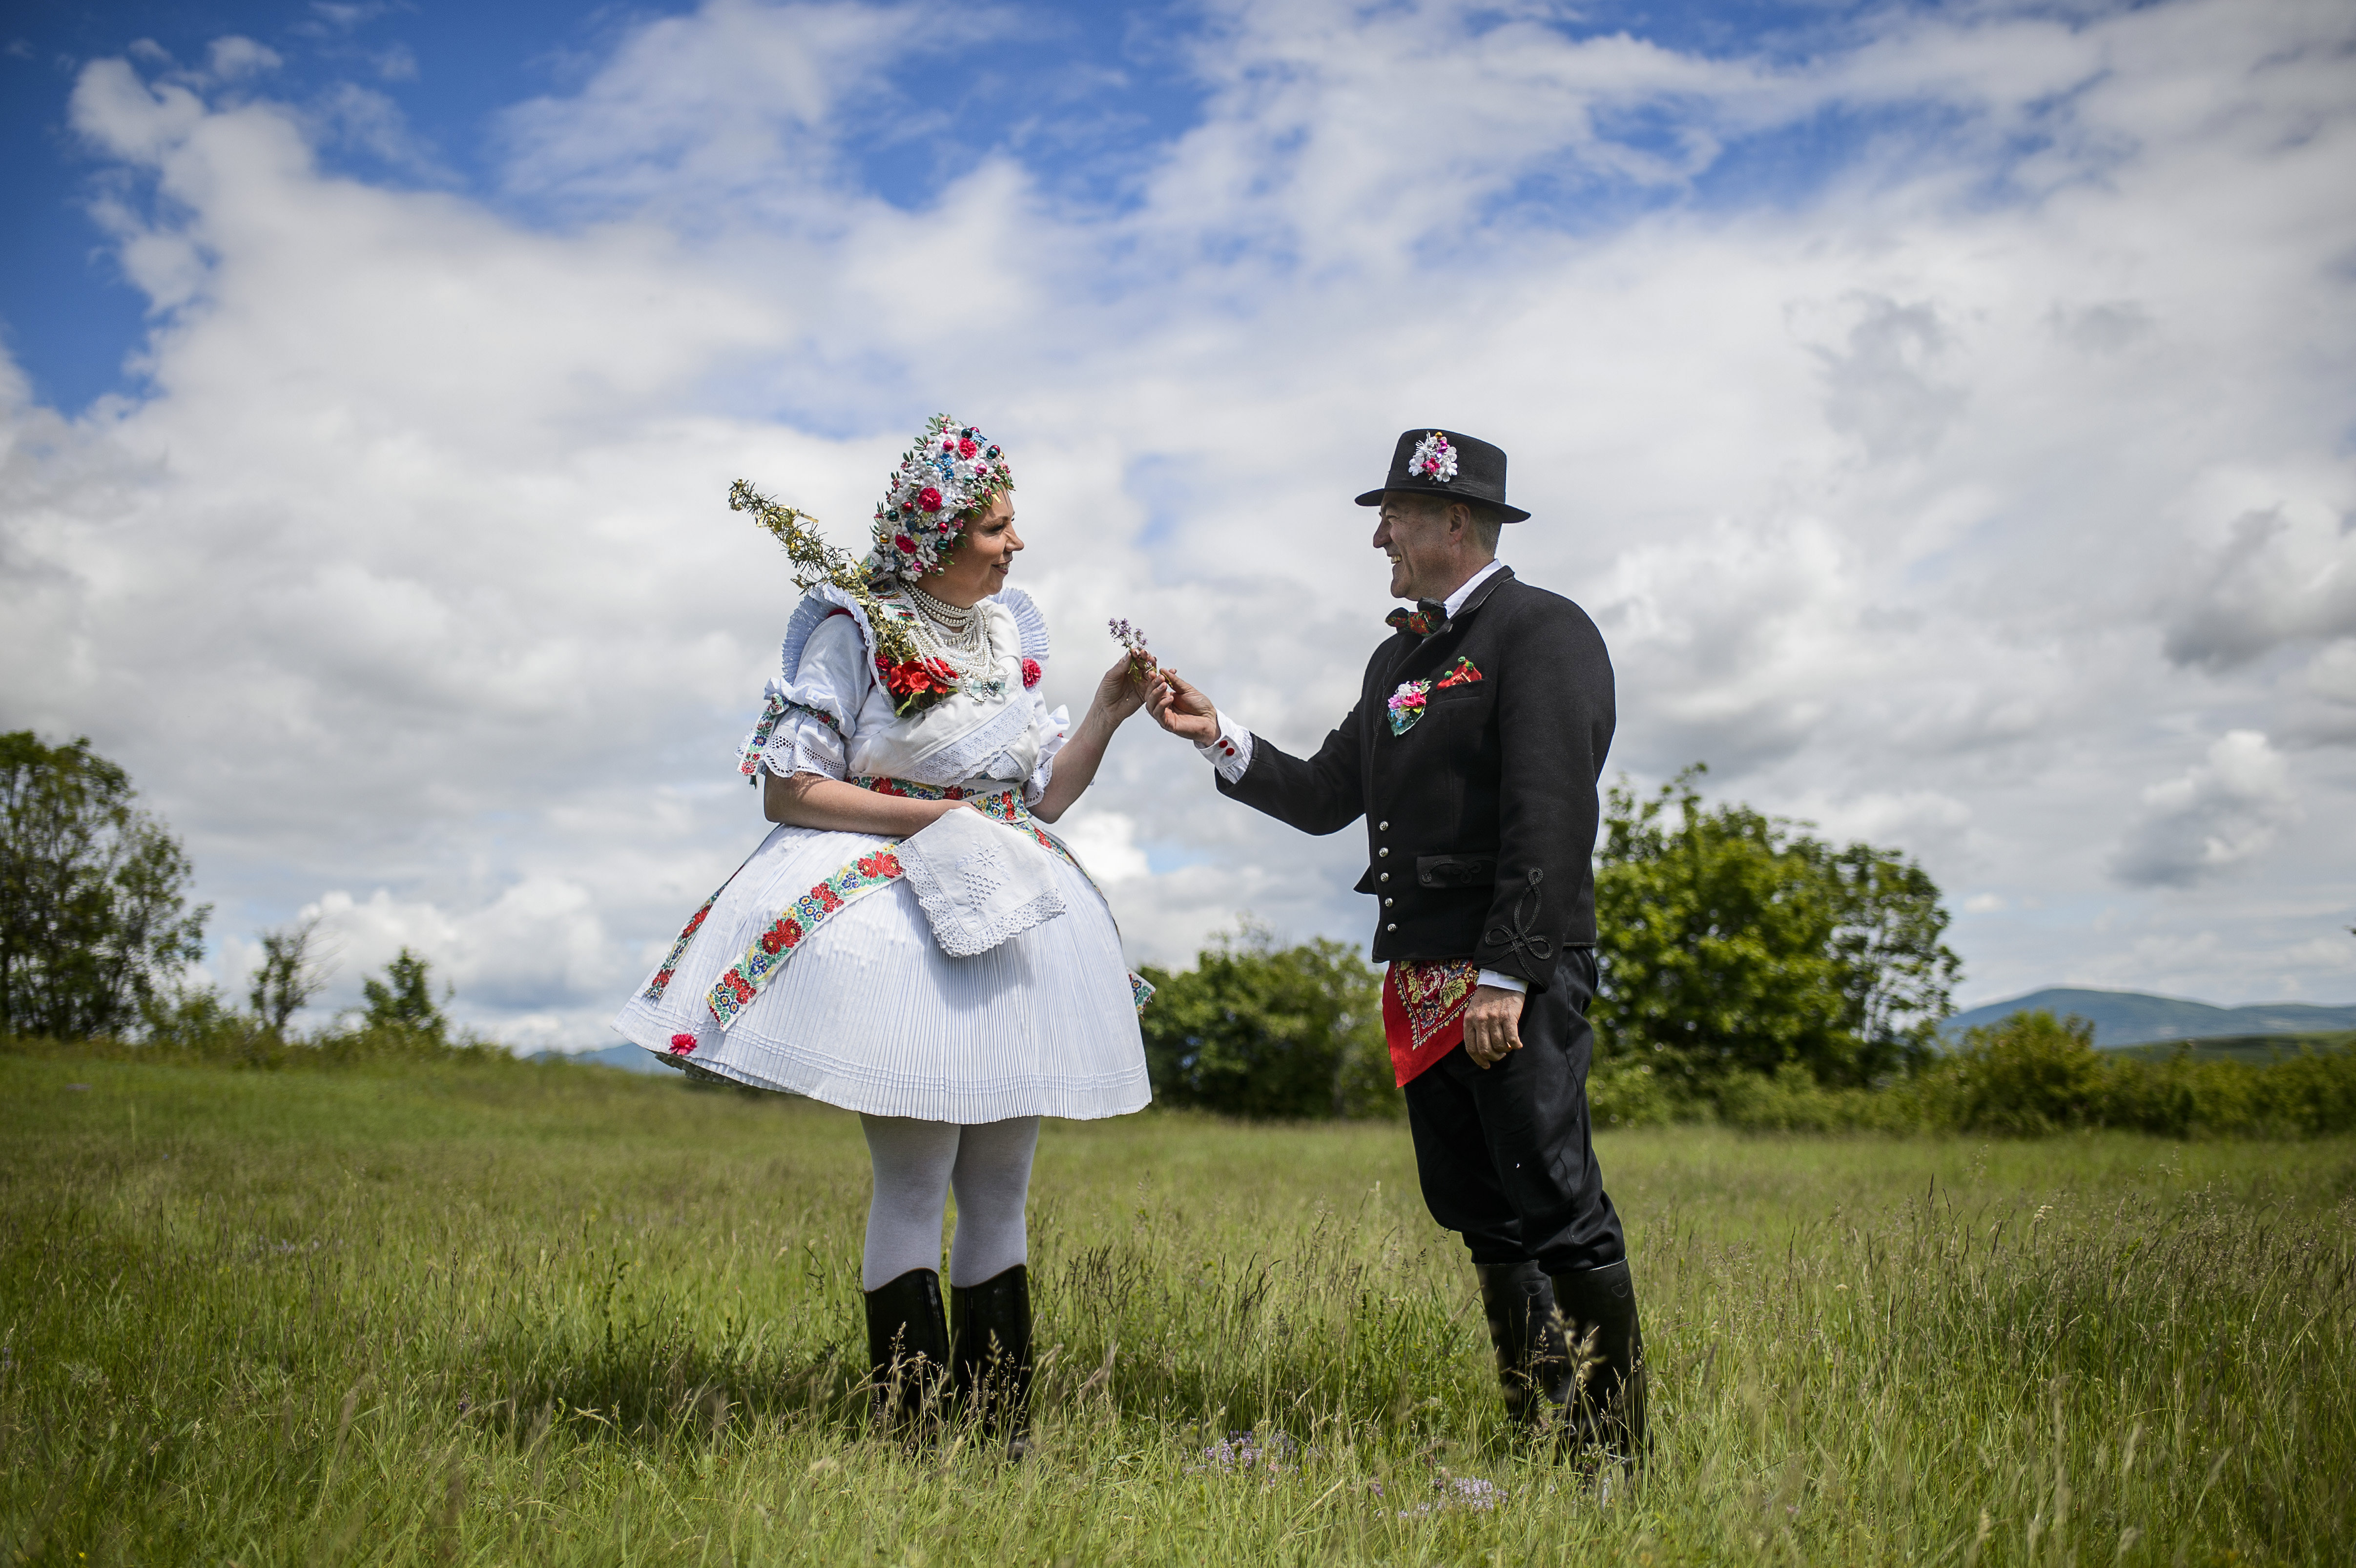 Ungarische Hochzeitstradition